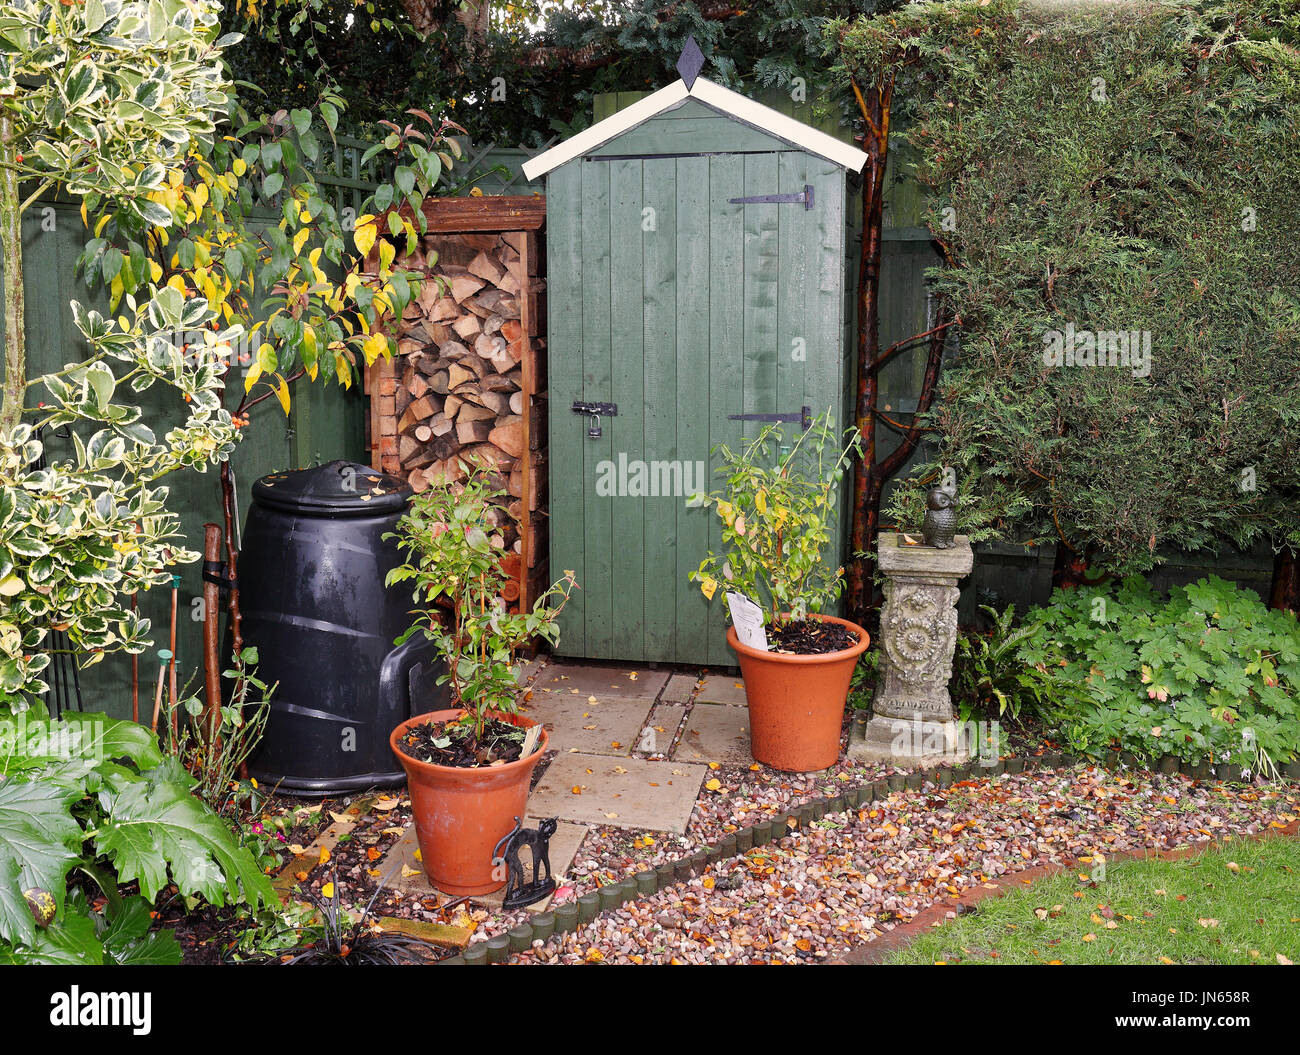 Englisch Garten im Herbst mit Schuppen und Log-Speicher Stockfotografie -  Alamy